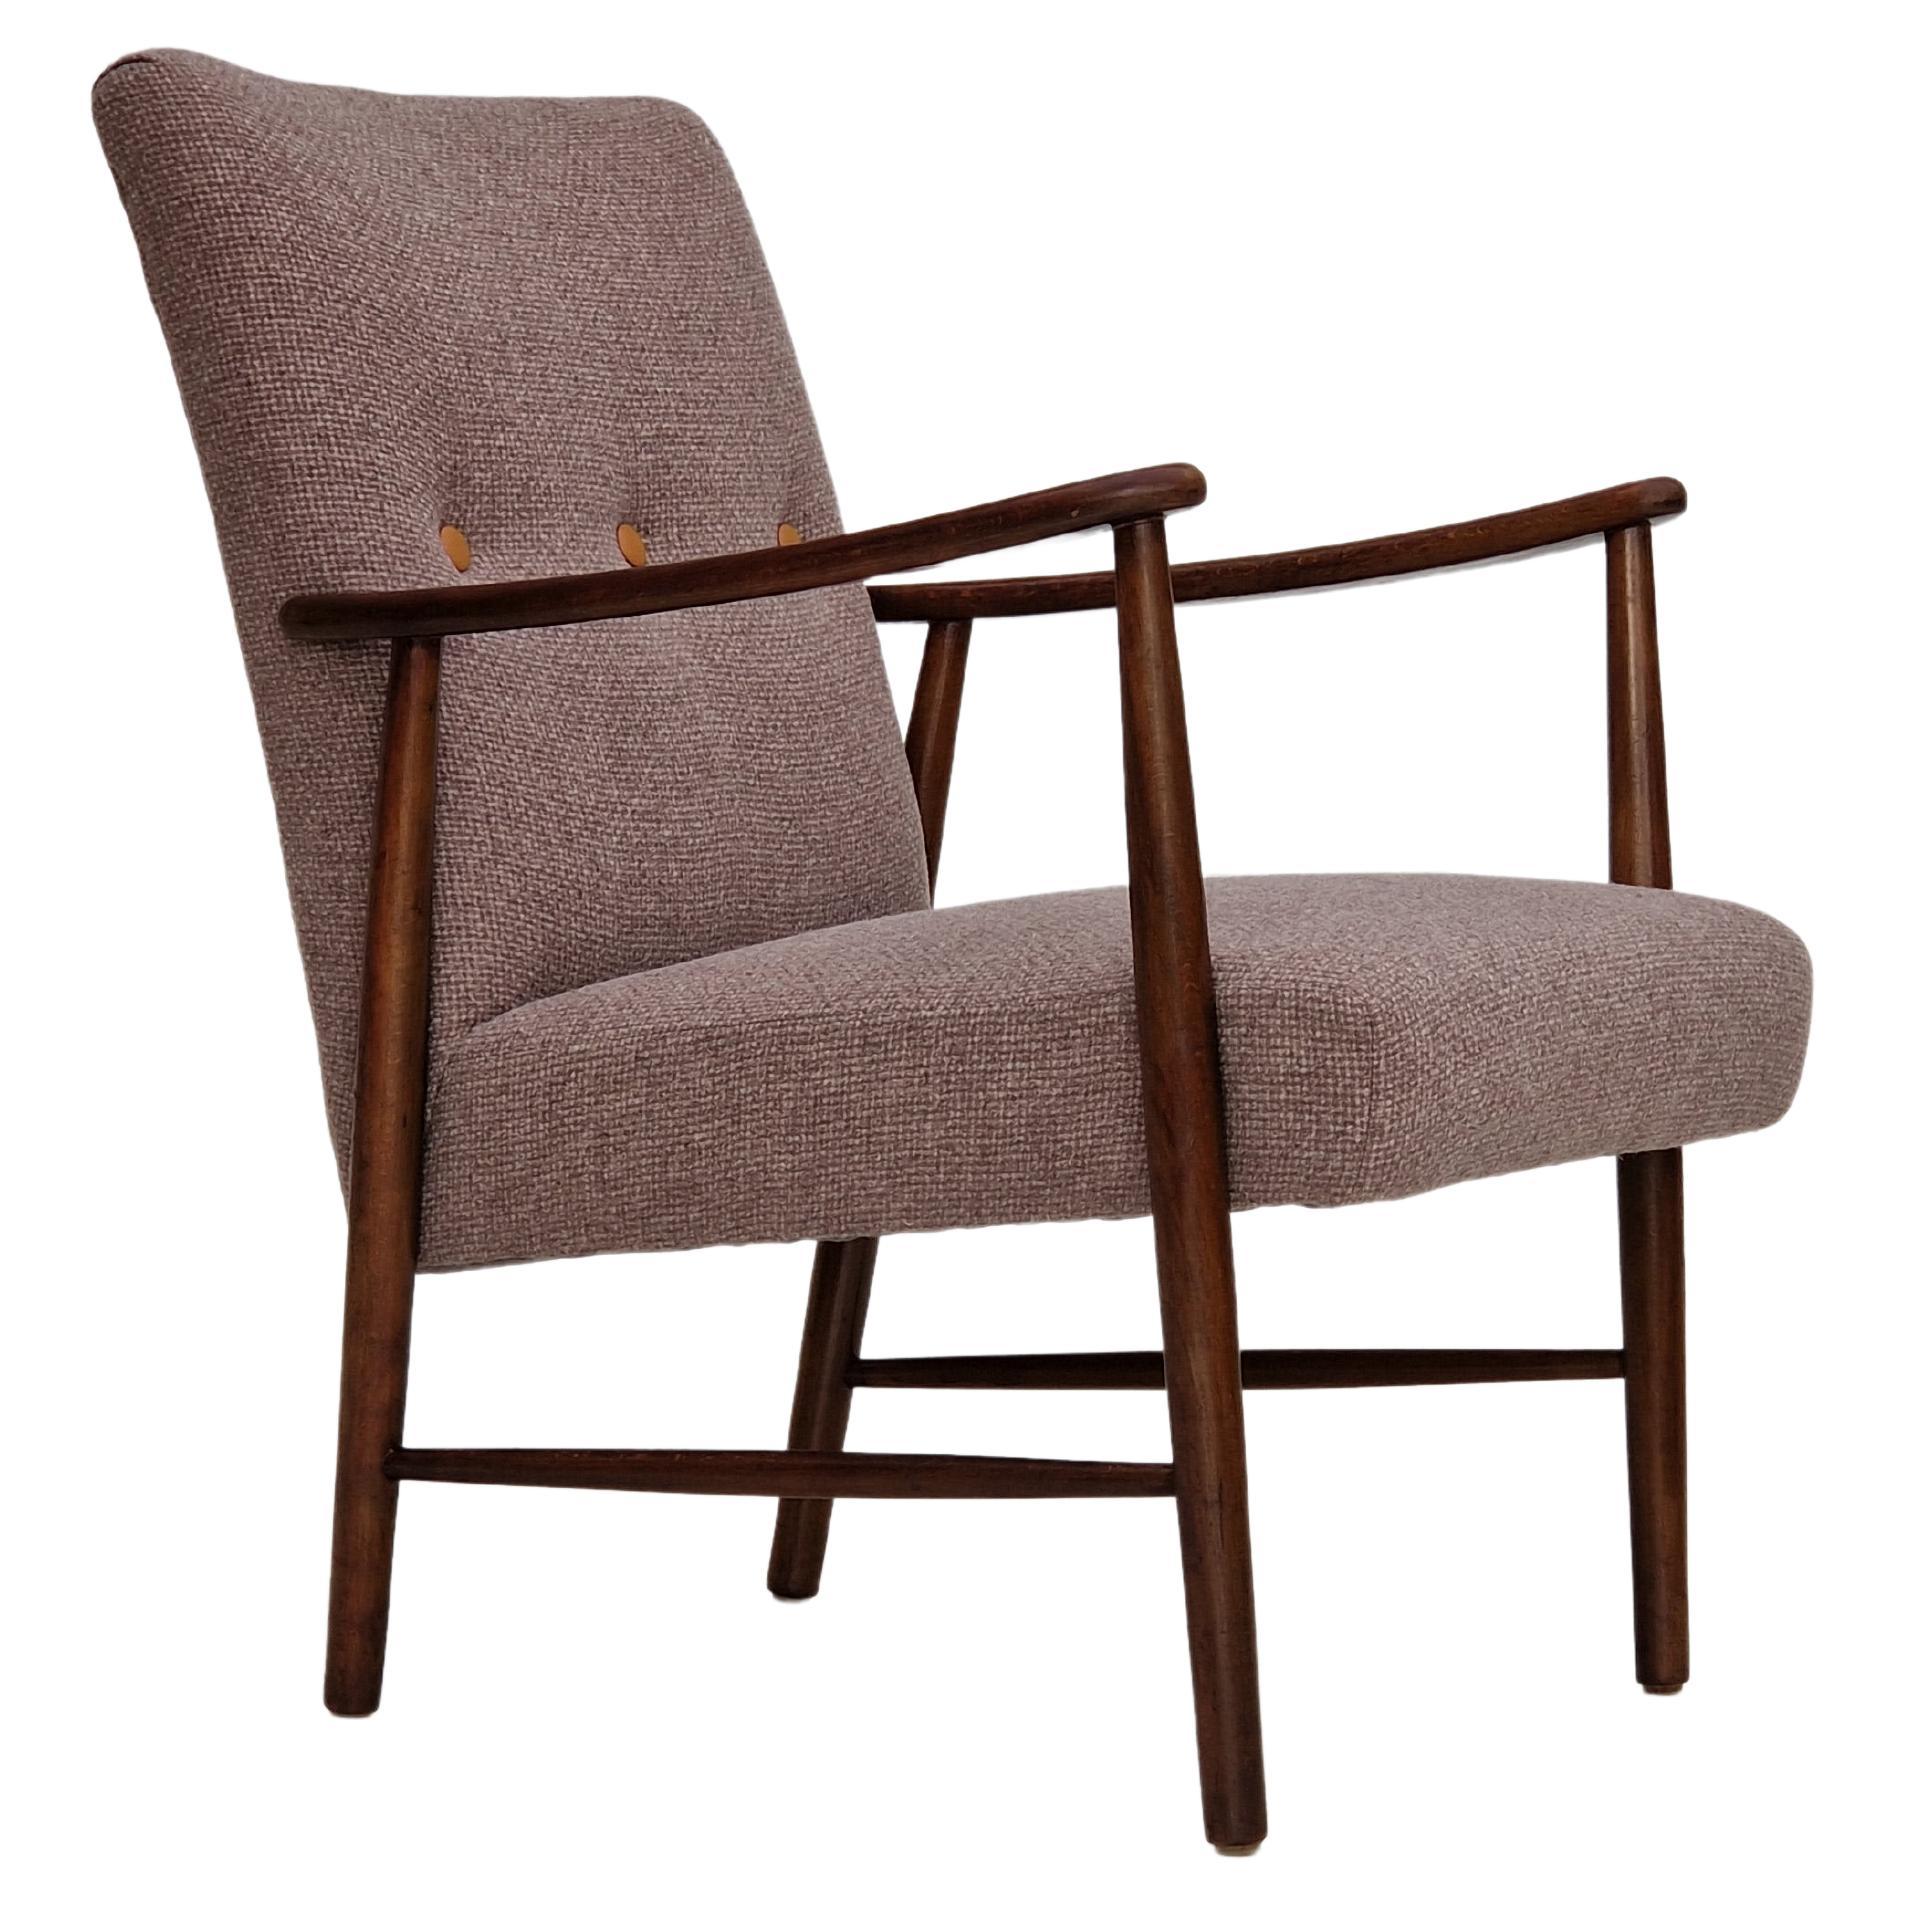 60er Jahre, schwedisches Design, aufgearbeiteter Sessel, Möbelwolle.